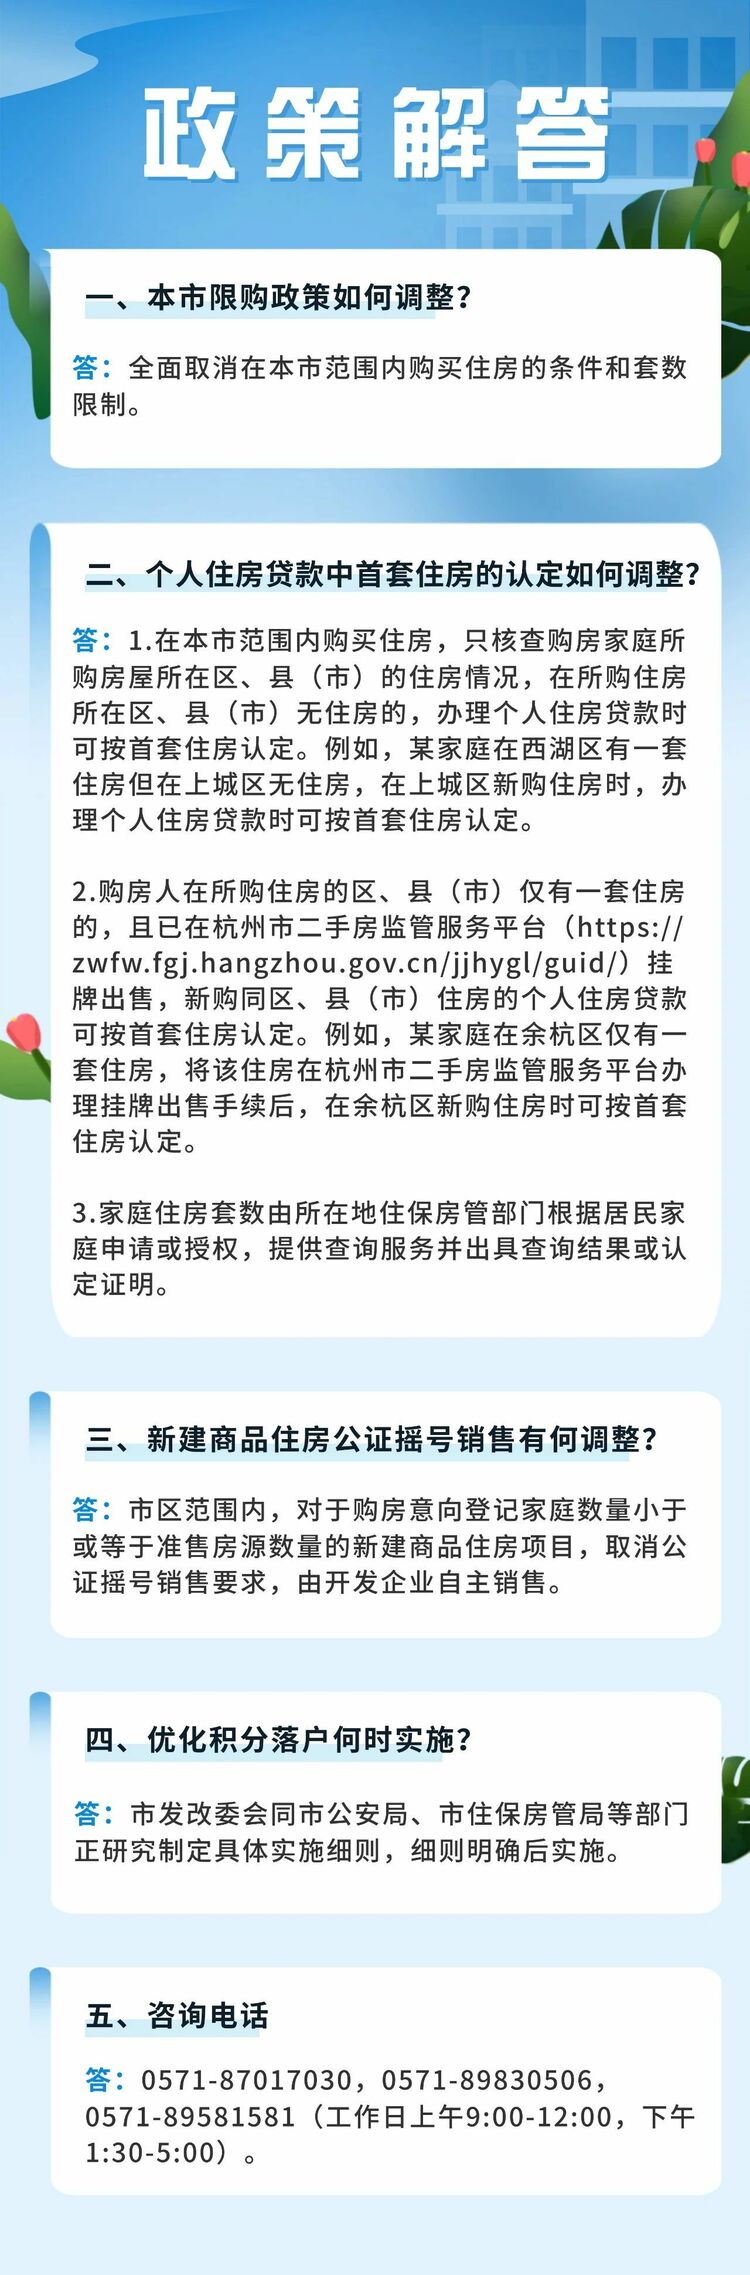 杭州：周至铲除住房限购 购房可申请落户